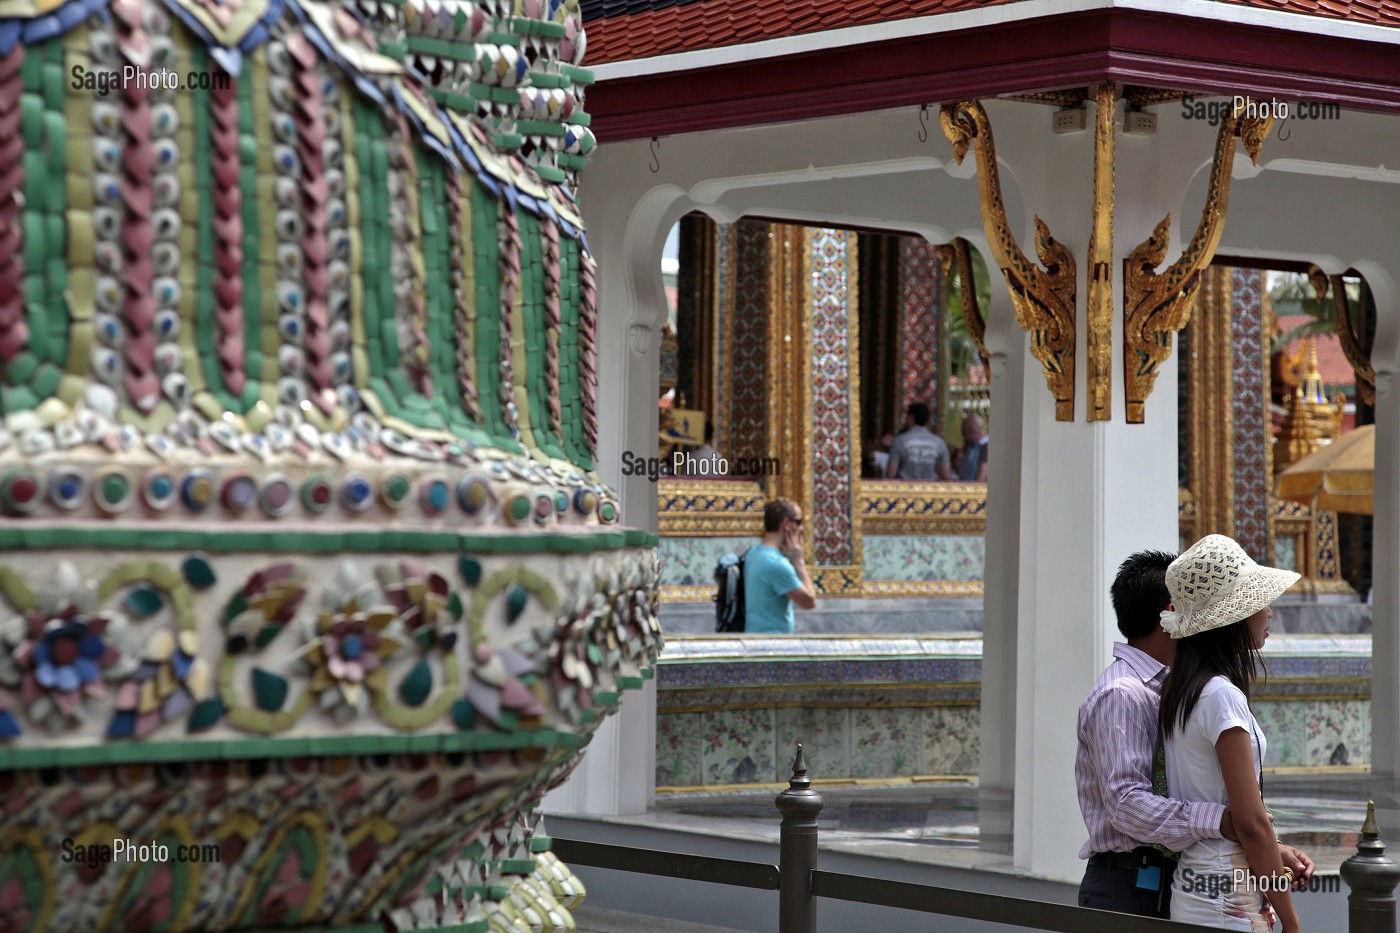 TOURISTES VISITANT LE GRAND PALAIS ROYAL DE BANGKOK, THAILANDE 